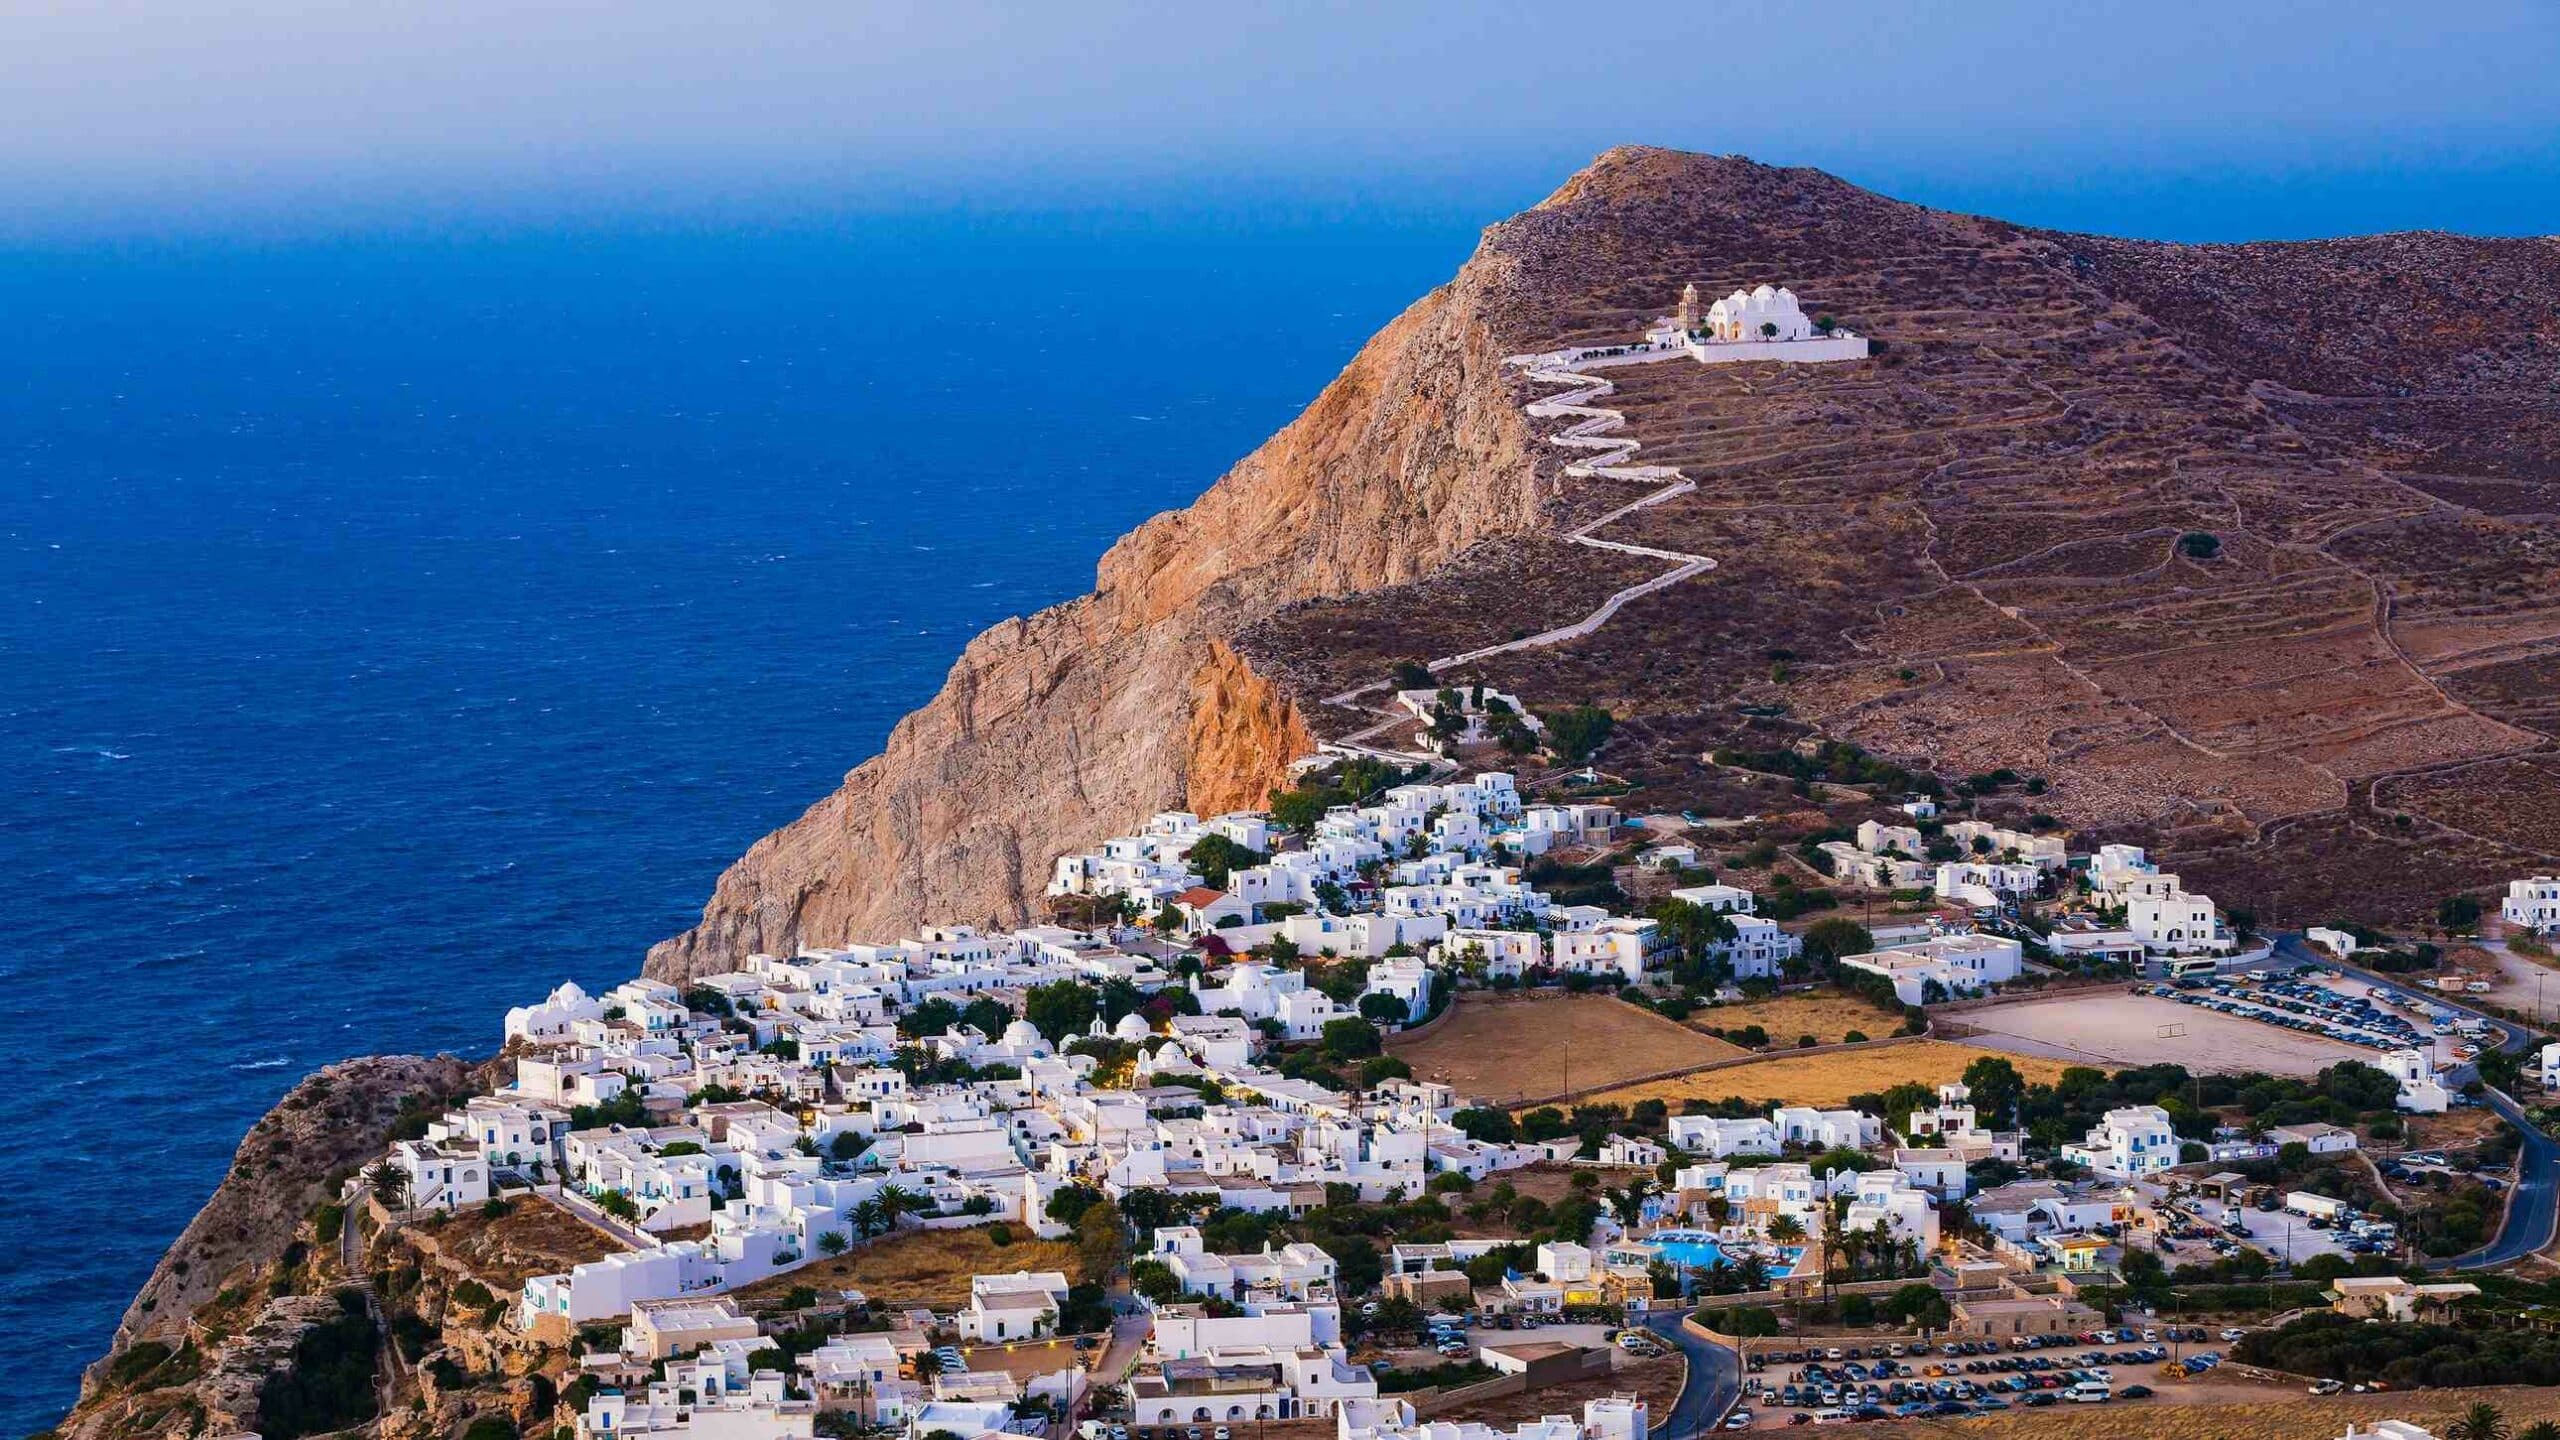 Galeria de imagens 4: Qual ilha grega tem as praias mais bonitas?